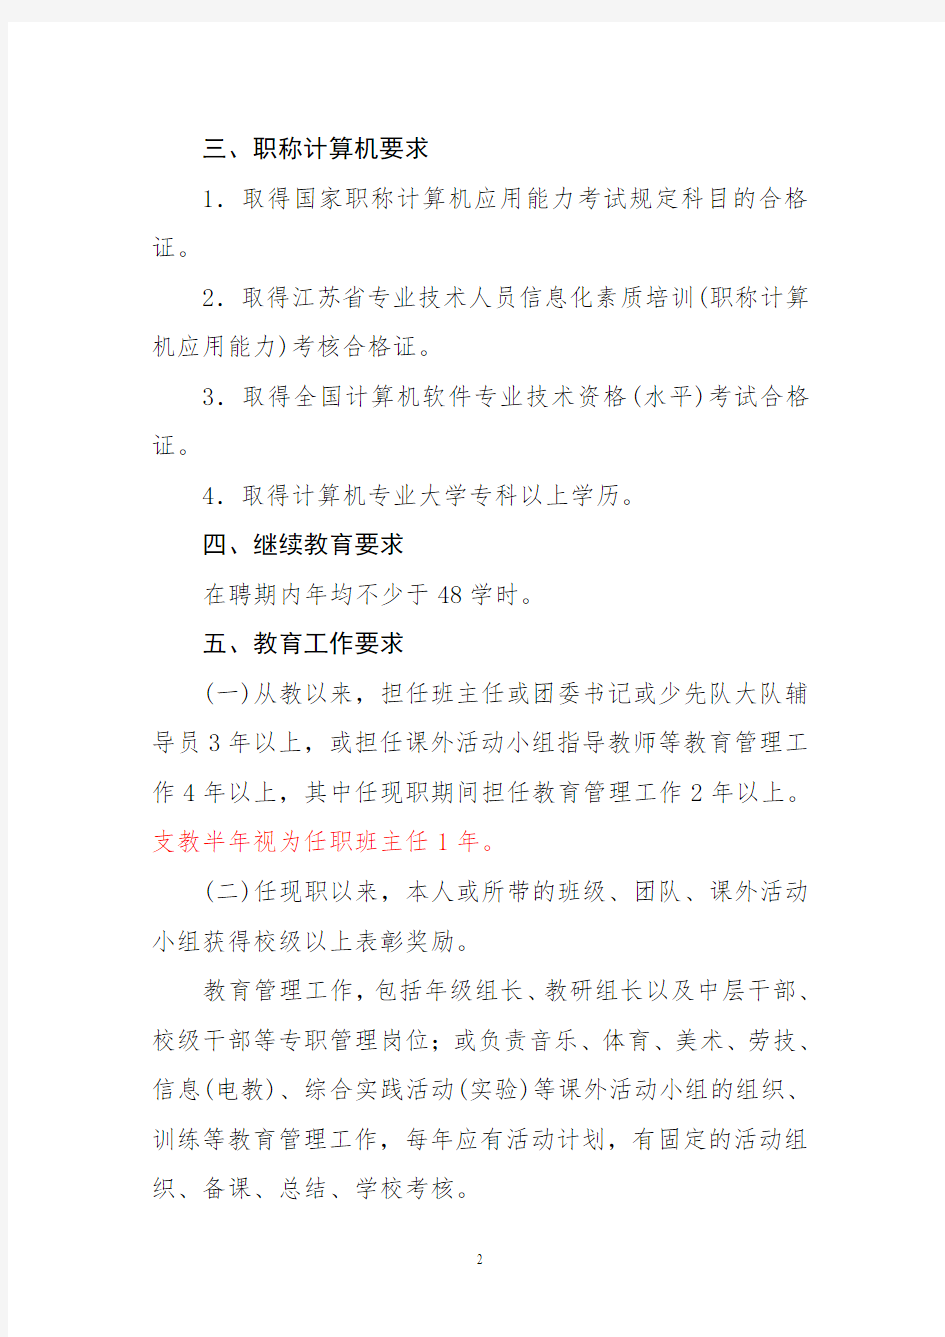 徐州市小学高级教师专业技术资格评审条件标准及职称量化积分标准评分办法